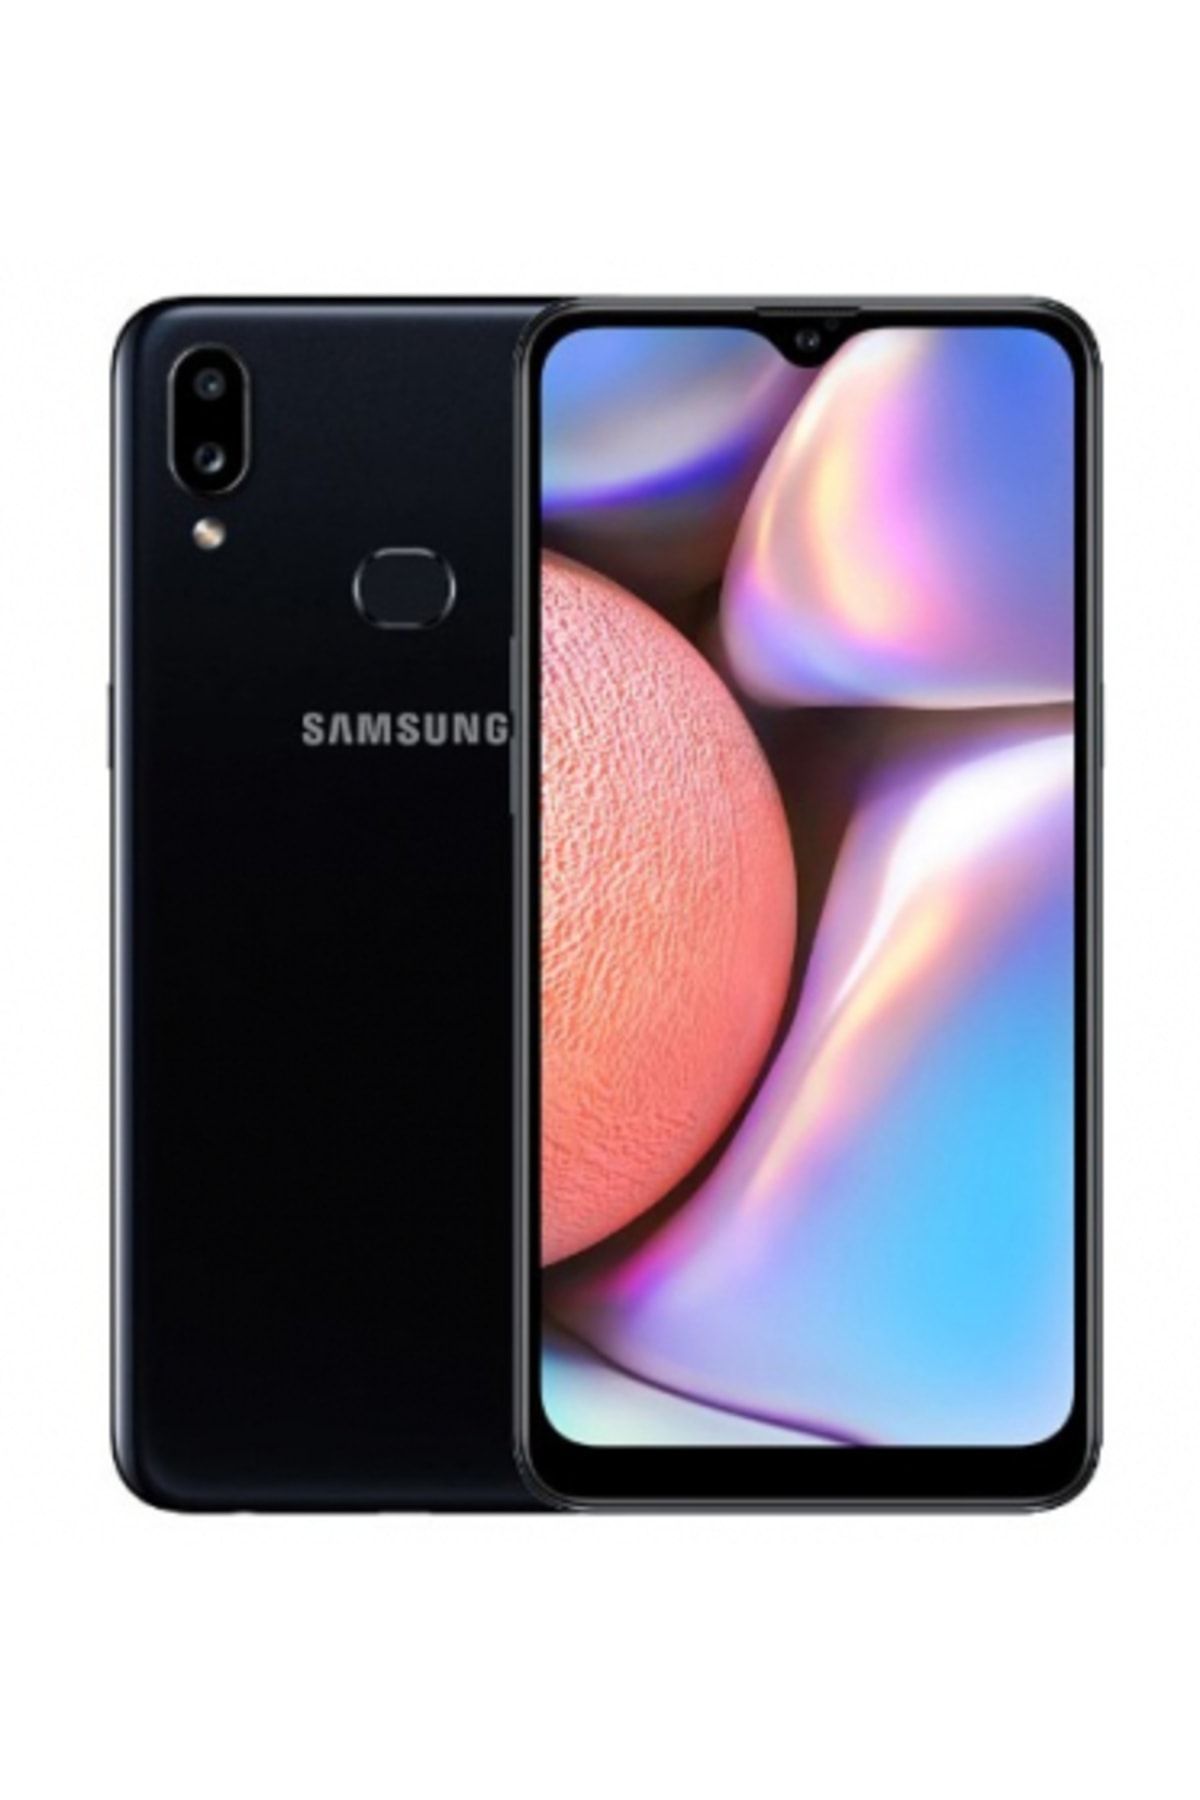 Samsung Yenilenmiş Galaxy A10s Black 32gb 12 Ay Garantili